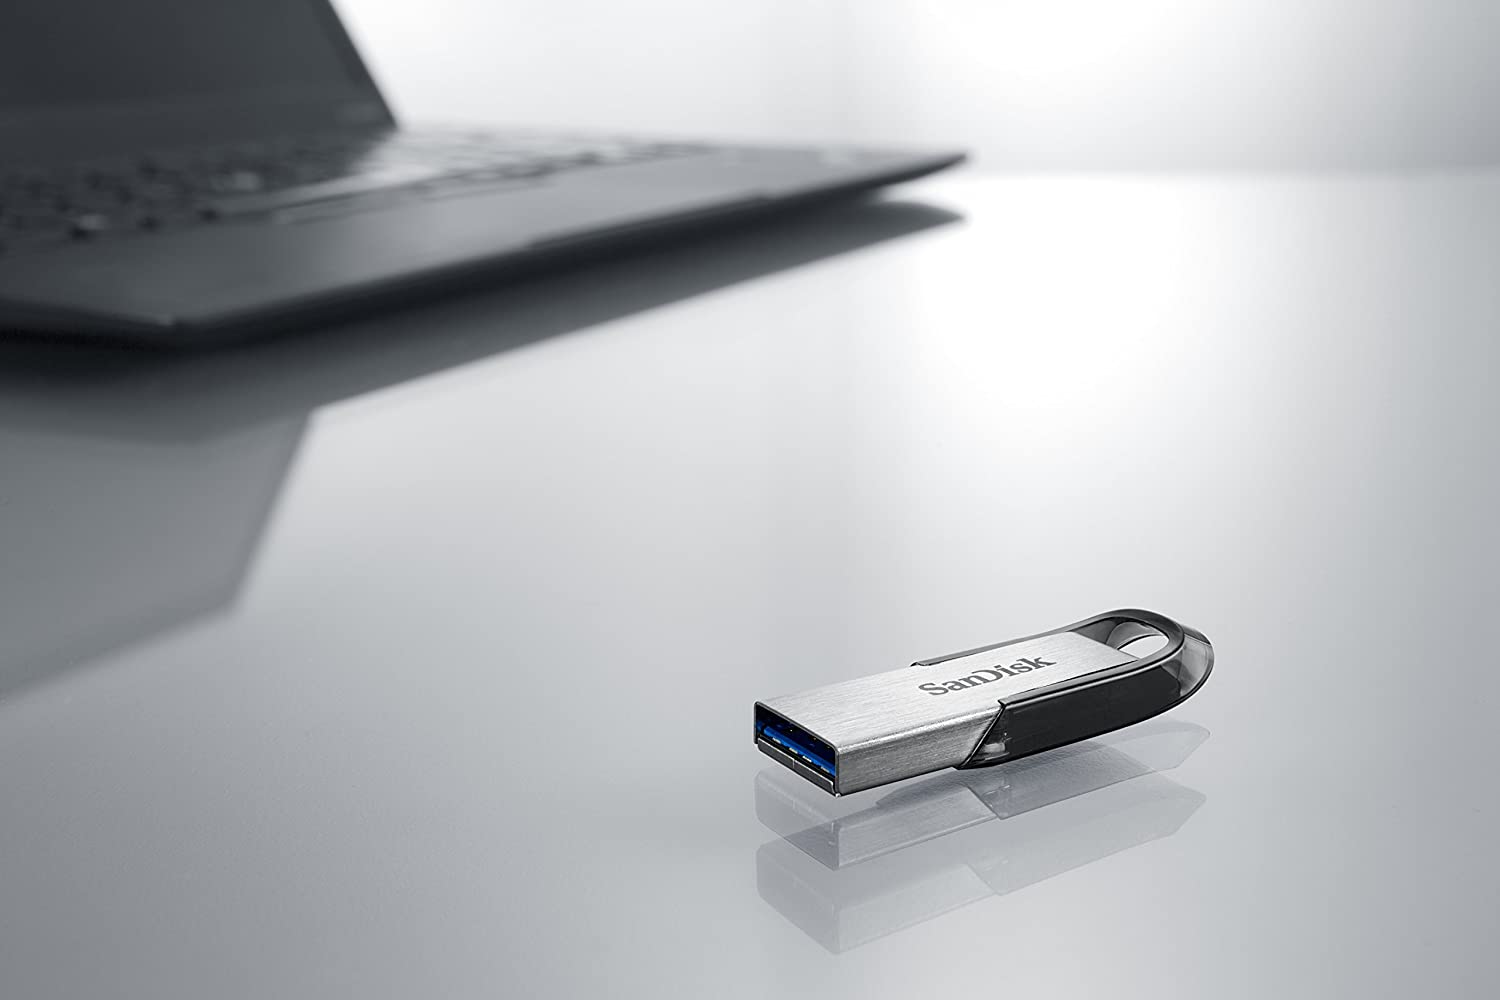 SANDISK Clé USB Ultra Flair - 16Gb- 3.0 - Gris